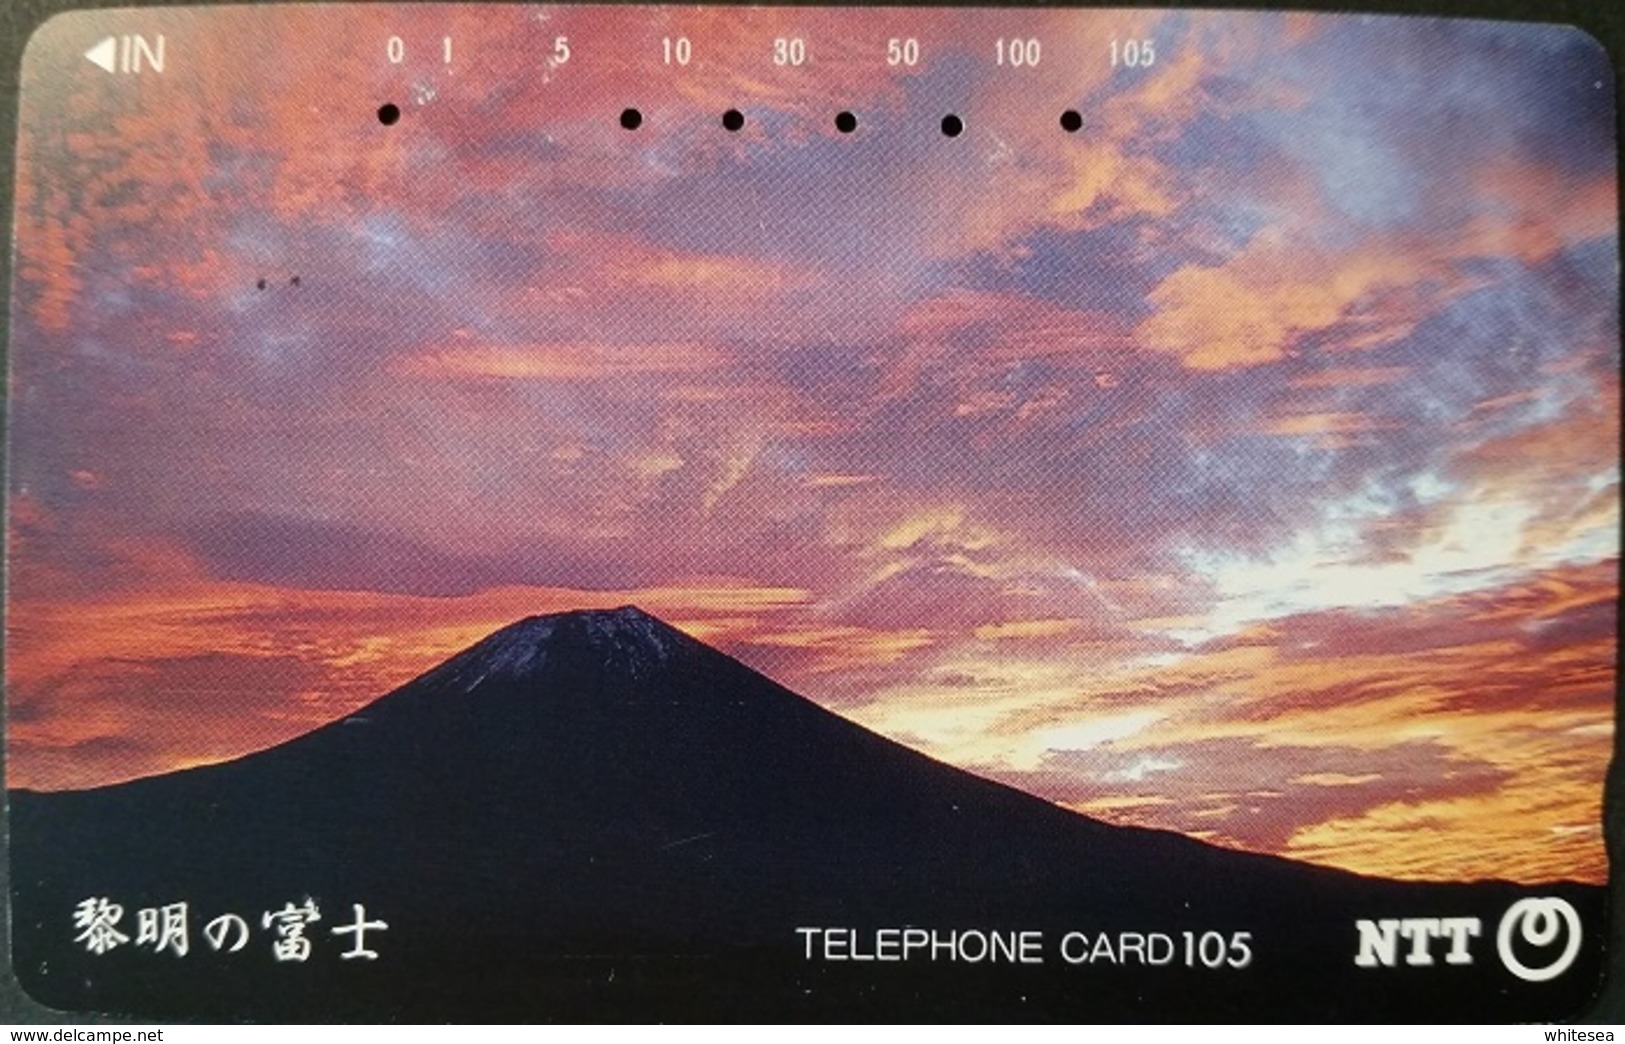 Telefonkarte Japan - Landschaft - Sonne - Wolken - 290-375 - Japan